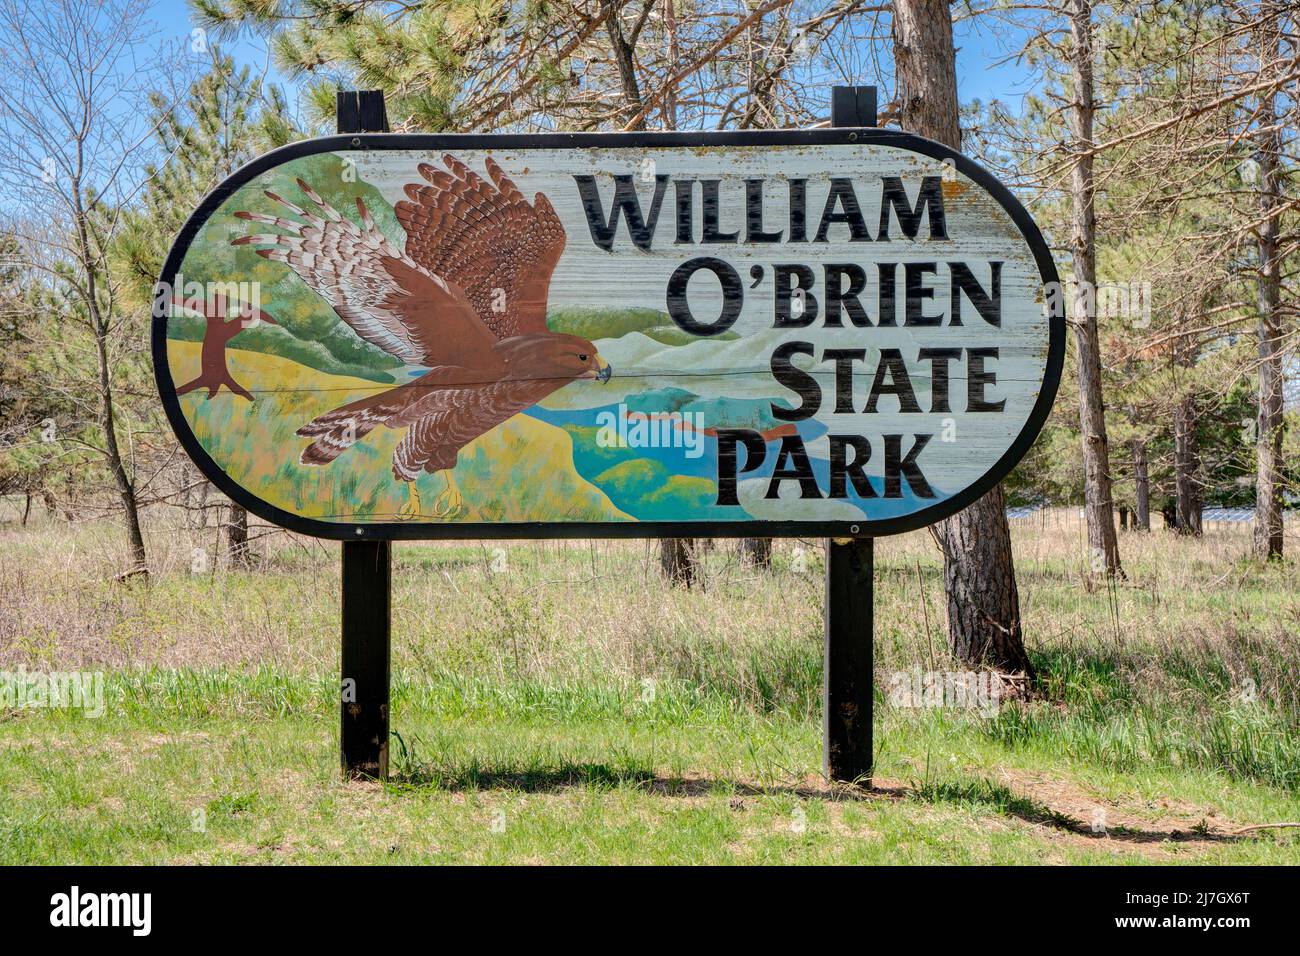 MARINE AUF DER ST. CROIX, MN, USA - 7. MAI 2022: Eintrittsschild zum William O'Brien State Park. Stockfoto